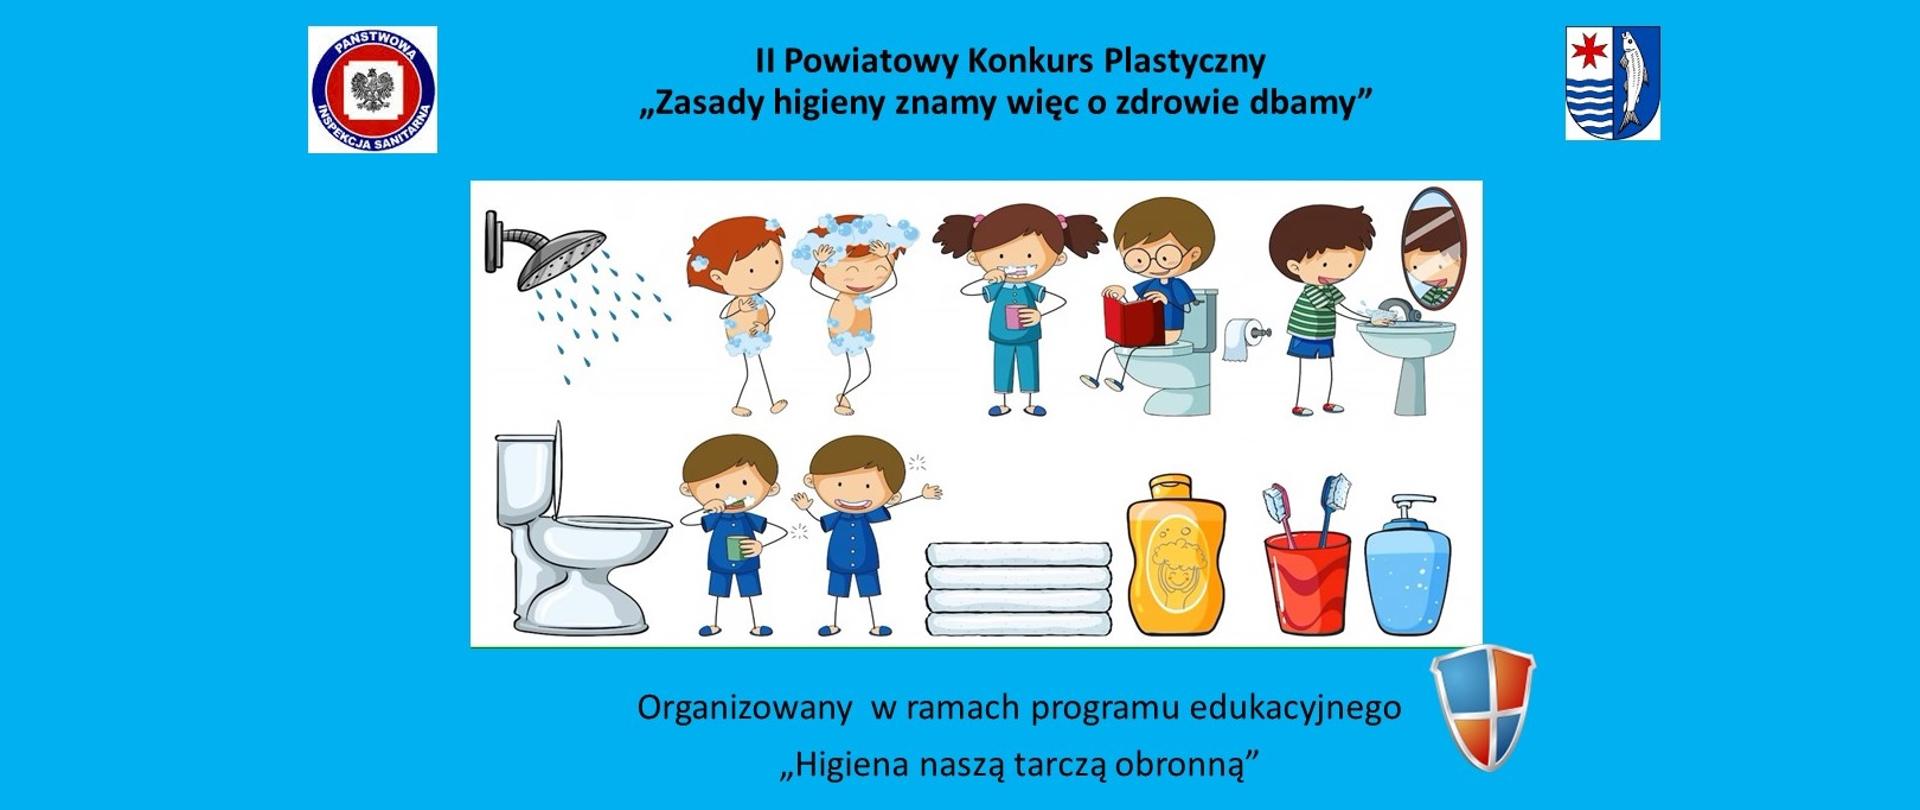 Ogłoszenie II Powiatowego Konkursu Plastycznego pt. „Zasady Higieny znamy, więc o zdrowie dbamy”